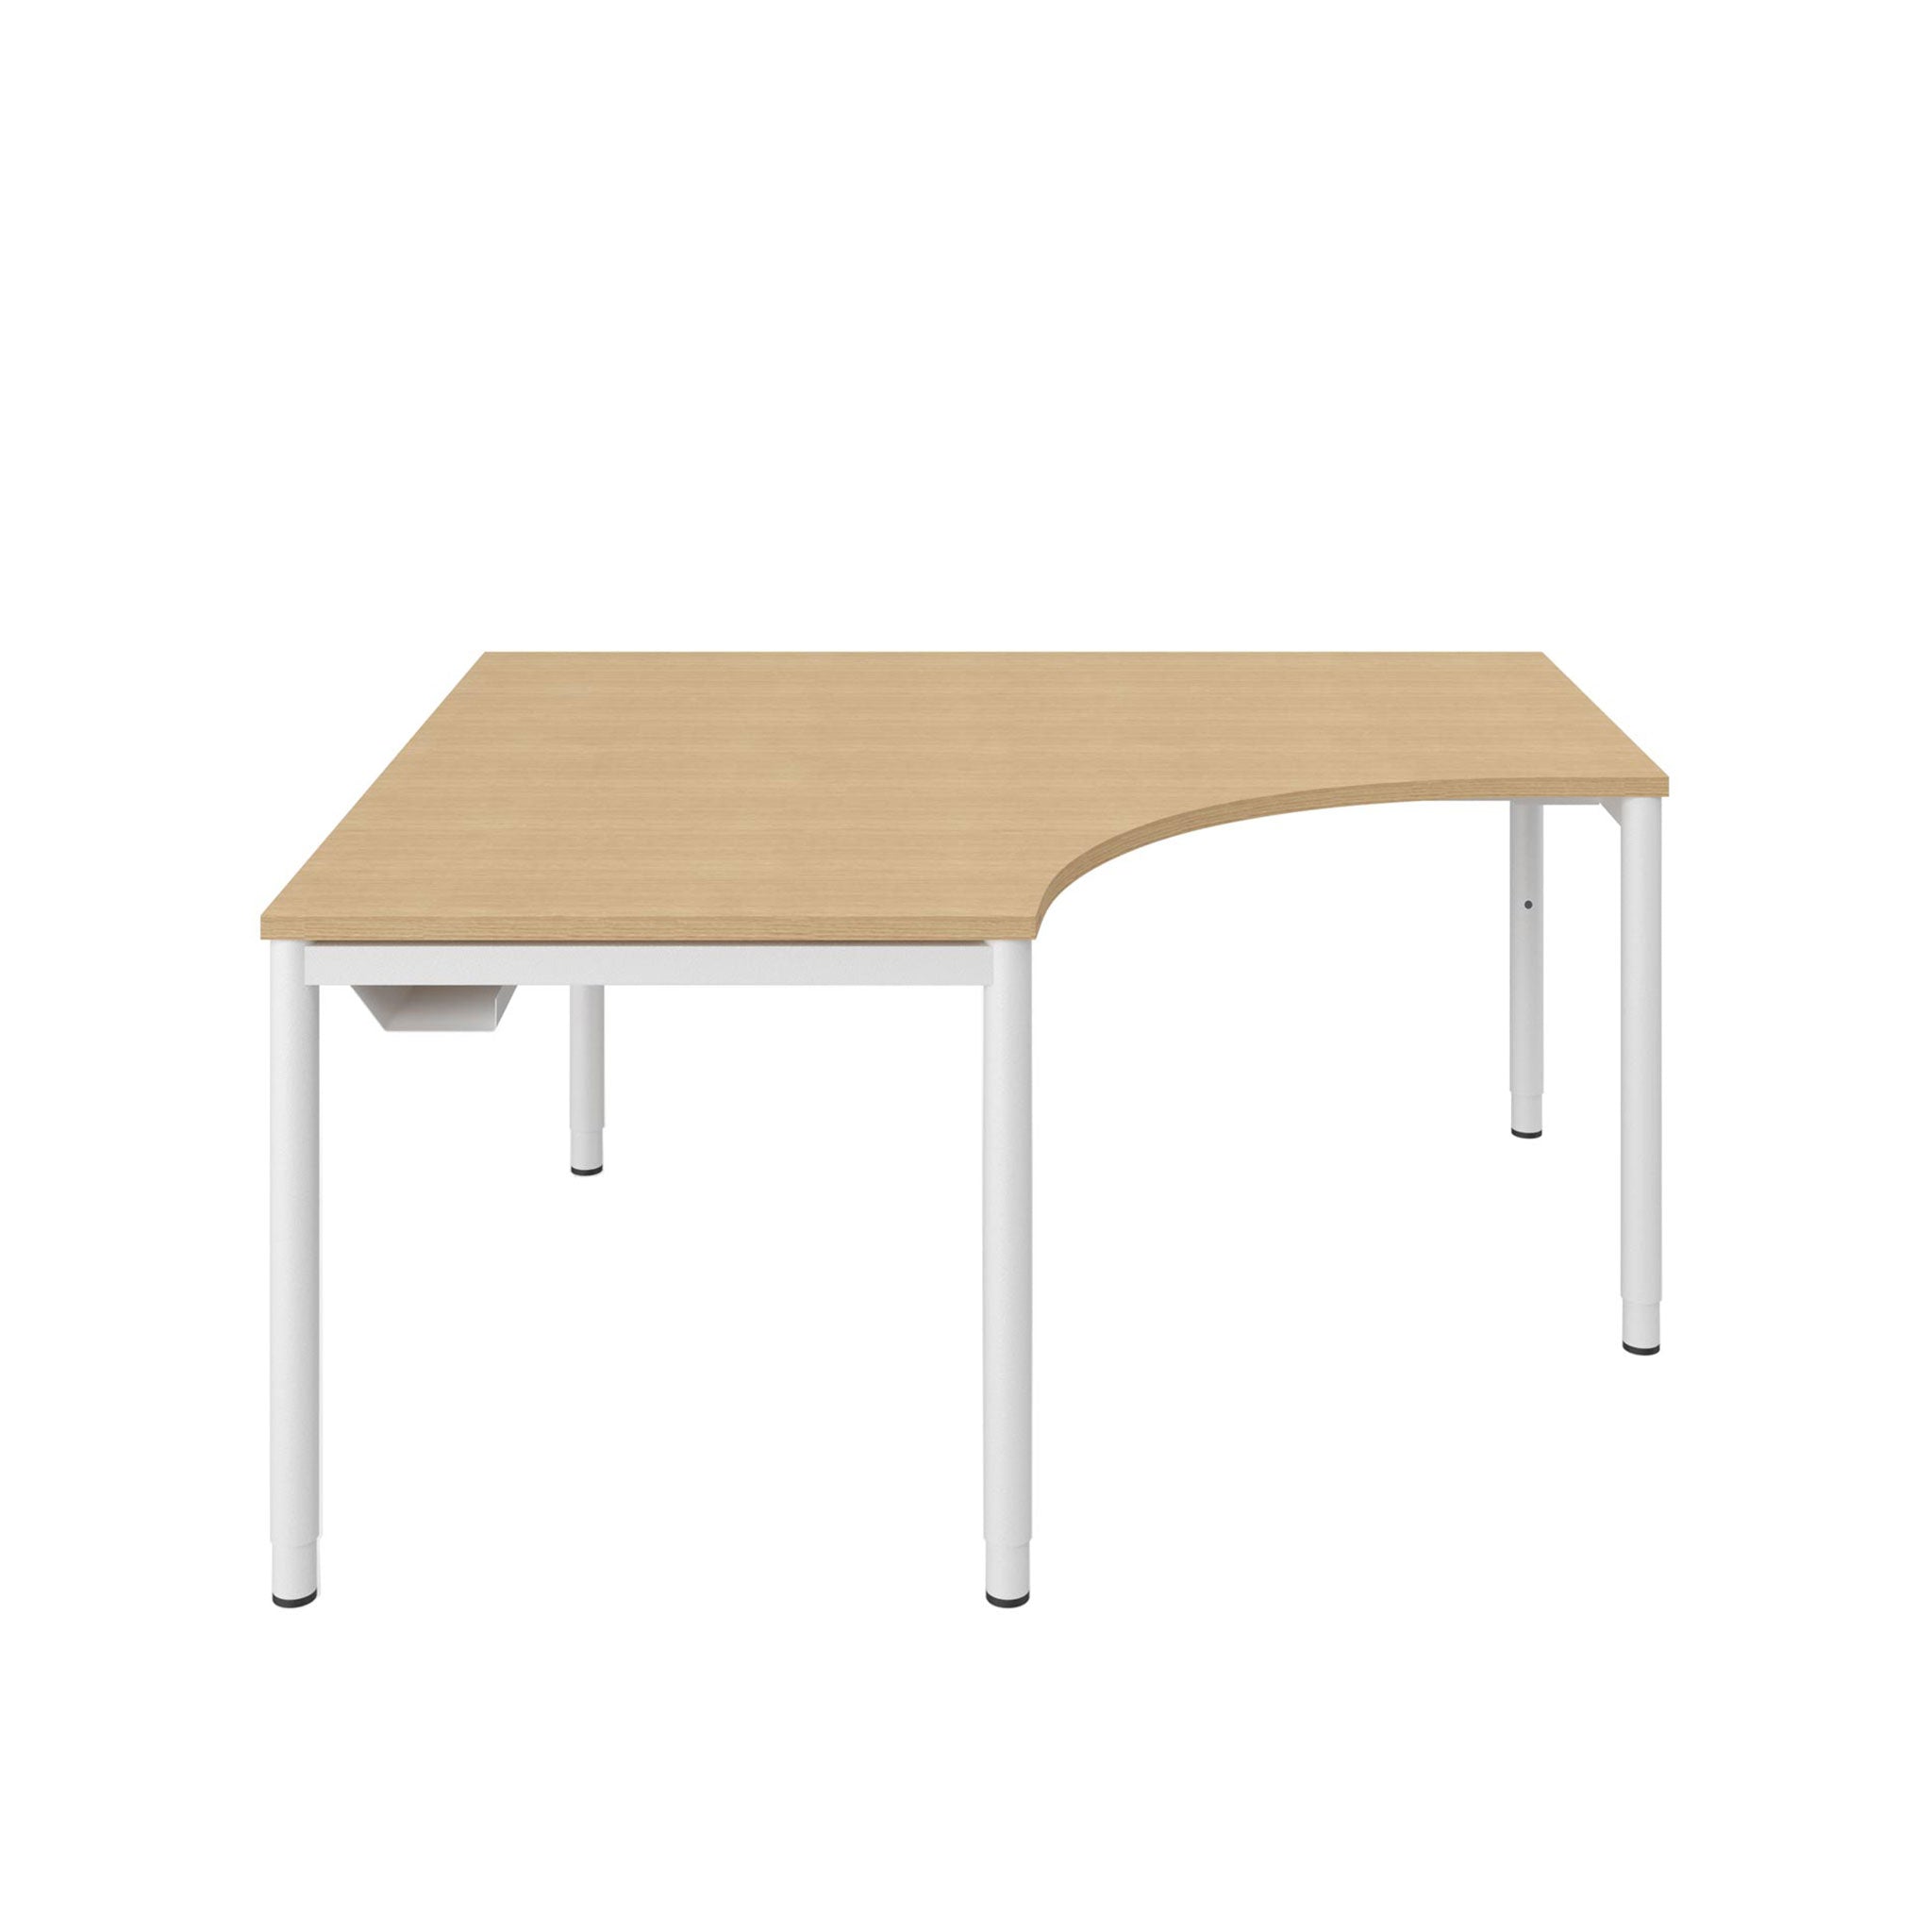 Vor weißem Hintergrund sieht man einen Eckarbeitstisch mit Eichenholz-Tischplatte, das Rundrohr-Gestell ist weiß. Der Ecktisch hat eine gerundete Aussparung. Der Tisch ist höhenanpassbar. Der Tisch hat einen integrierten Kabelkanal, den man auf dezente Weise links unter dem Tisch sieht.